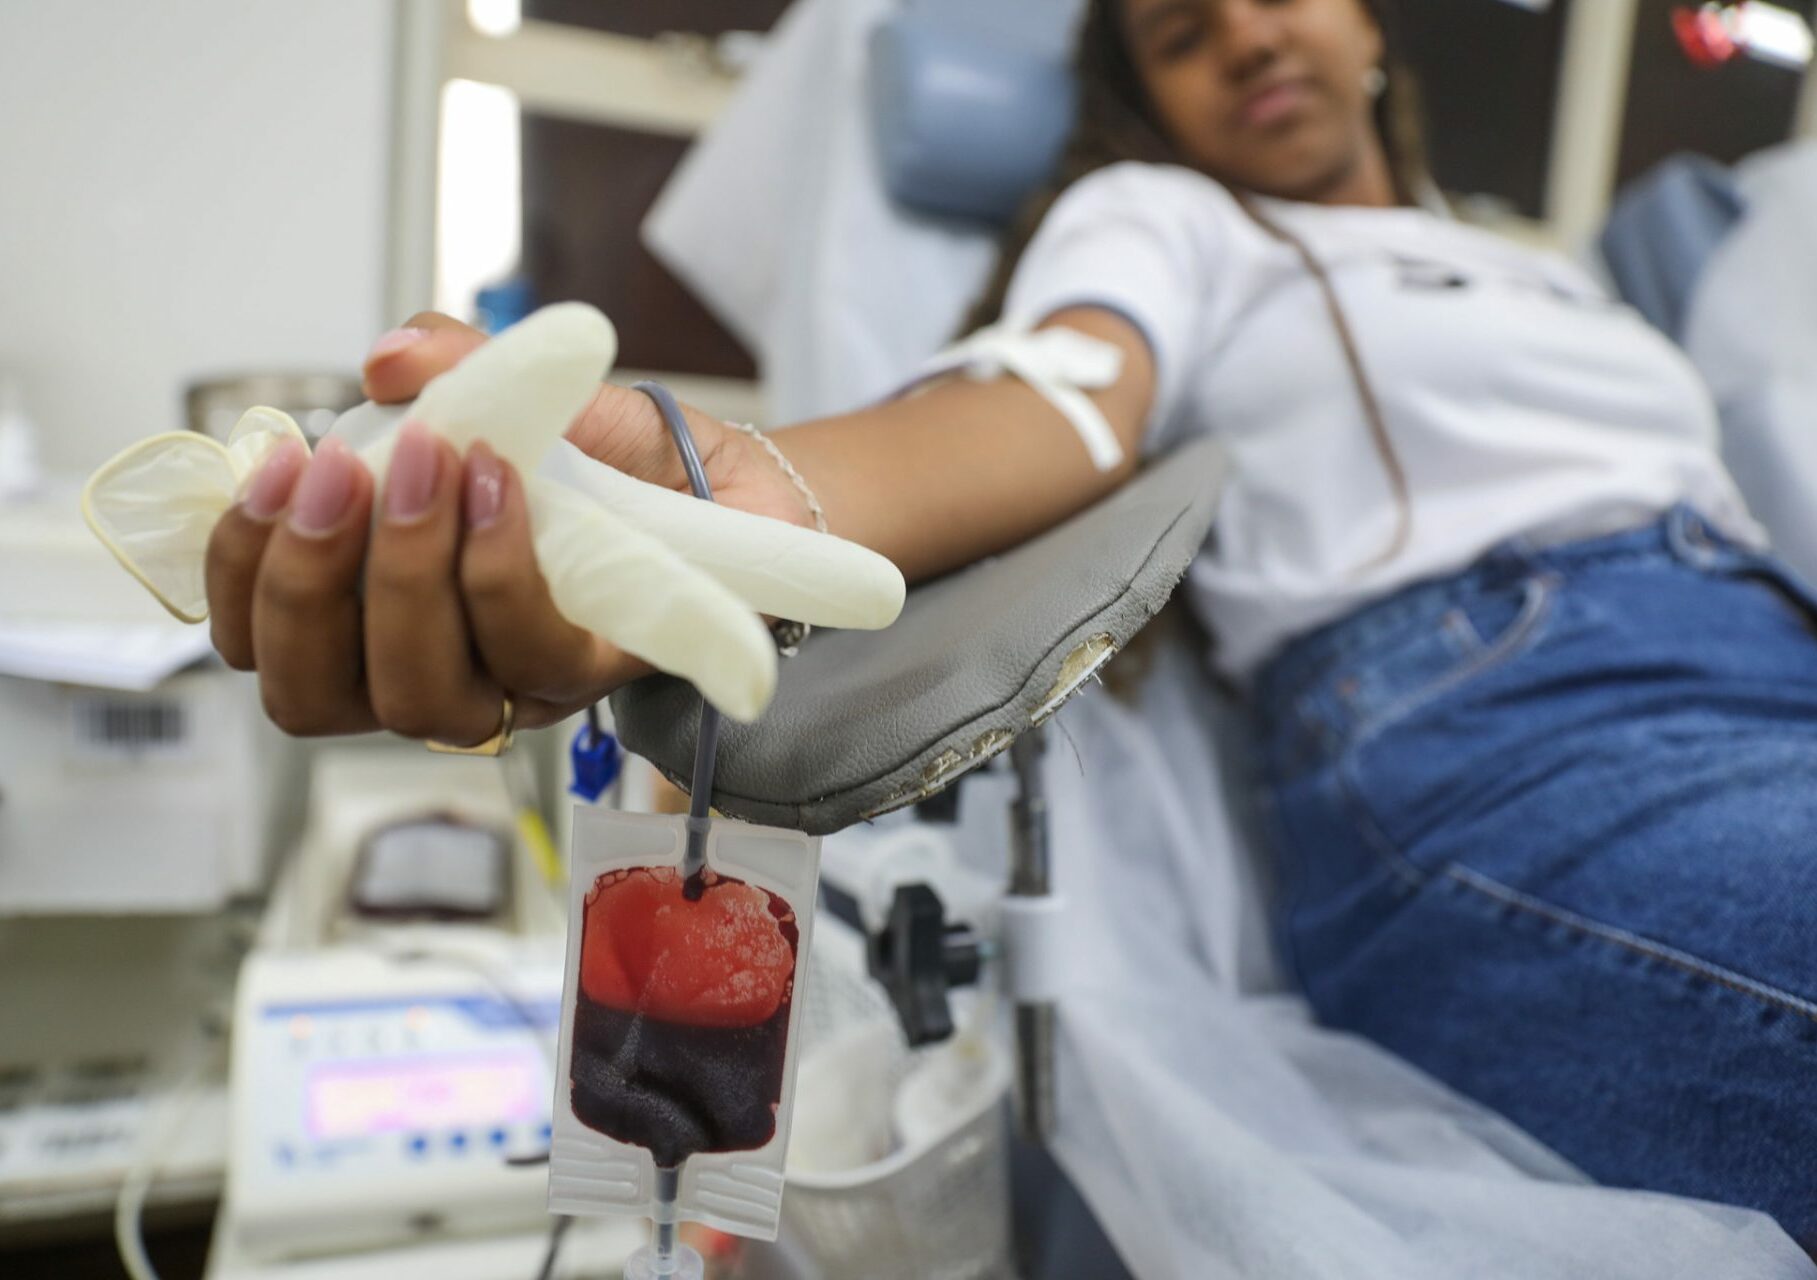 Hemocentro opera 42% abaixo do ideal e convoca população para doar sangue